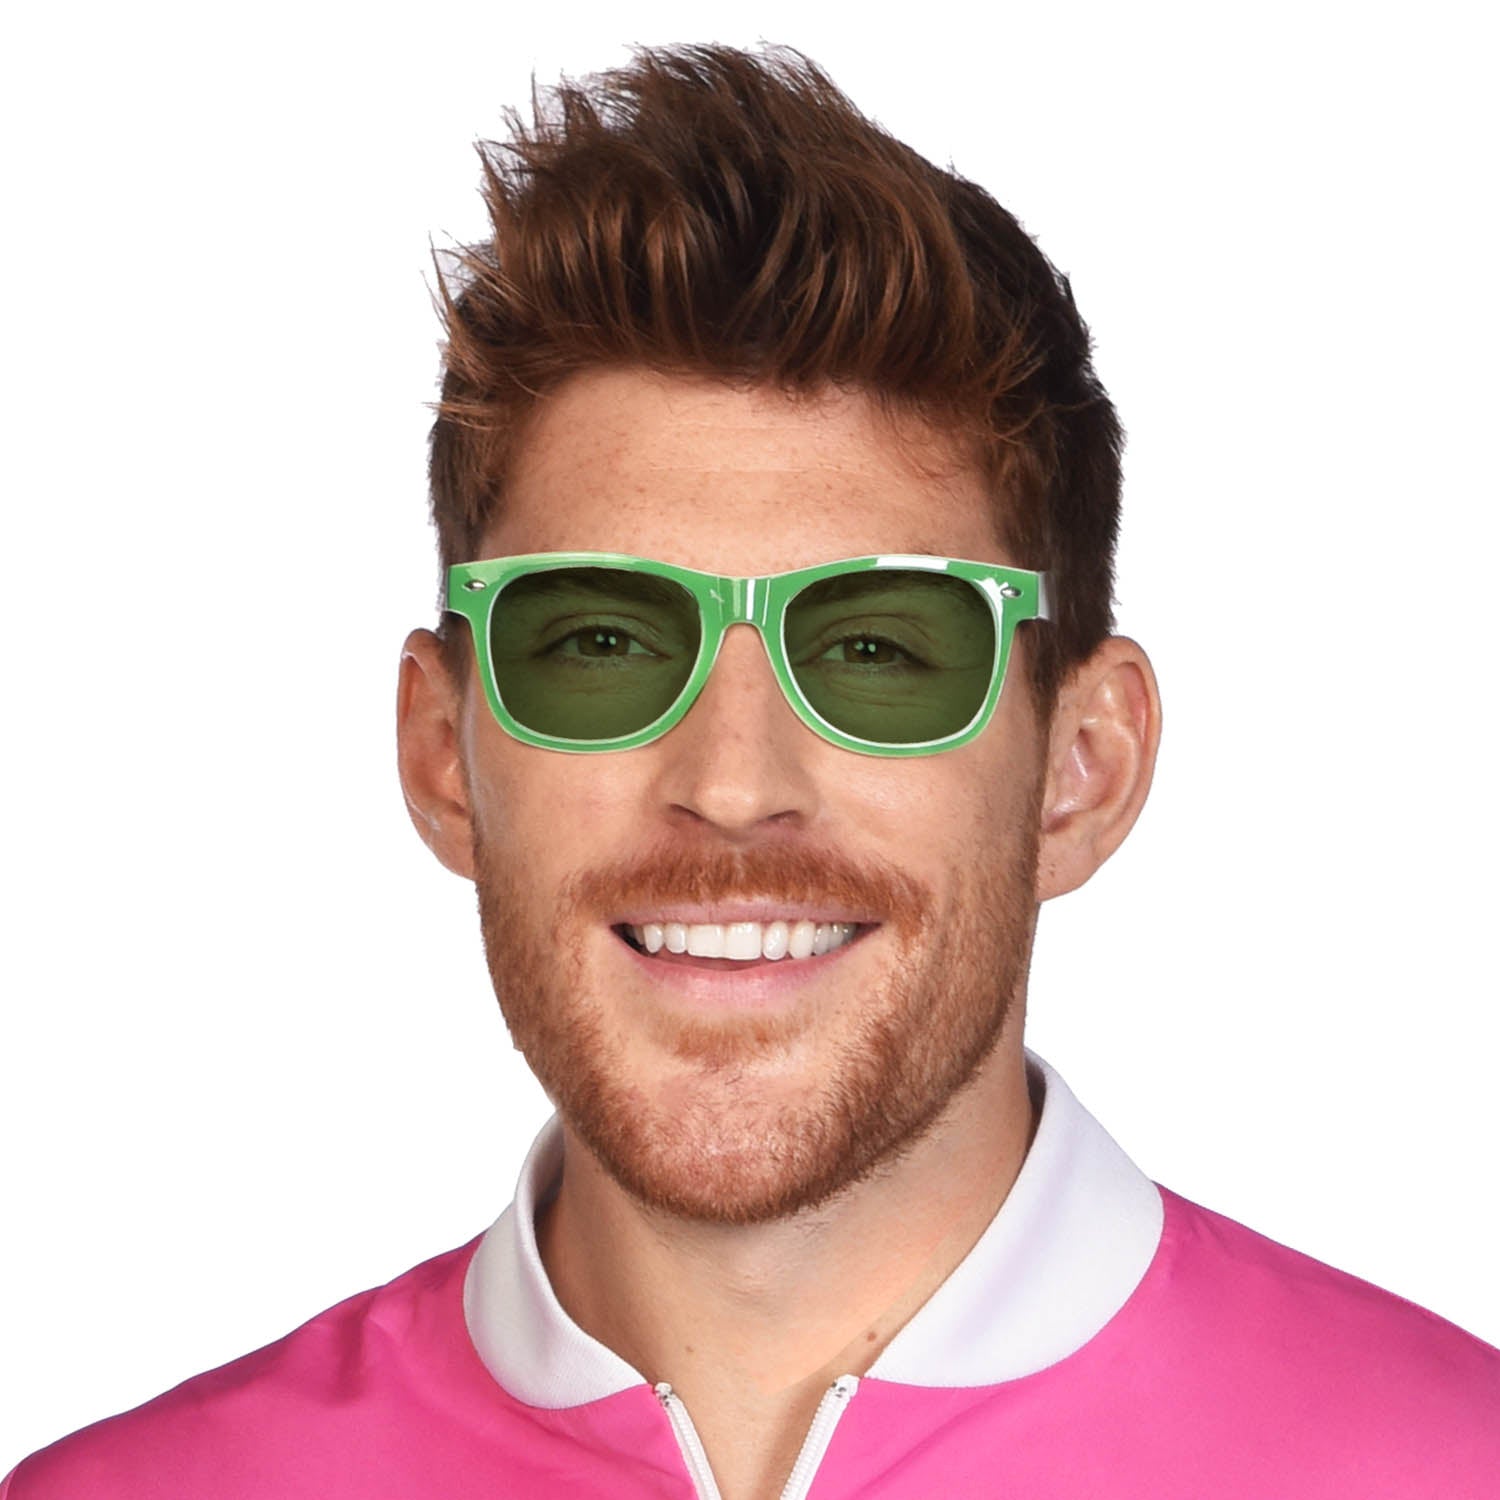 Green Retro Sunglasses